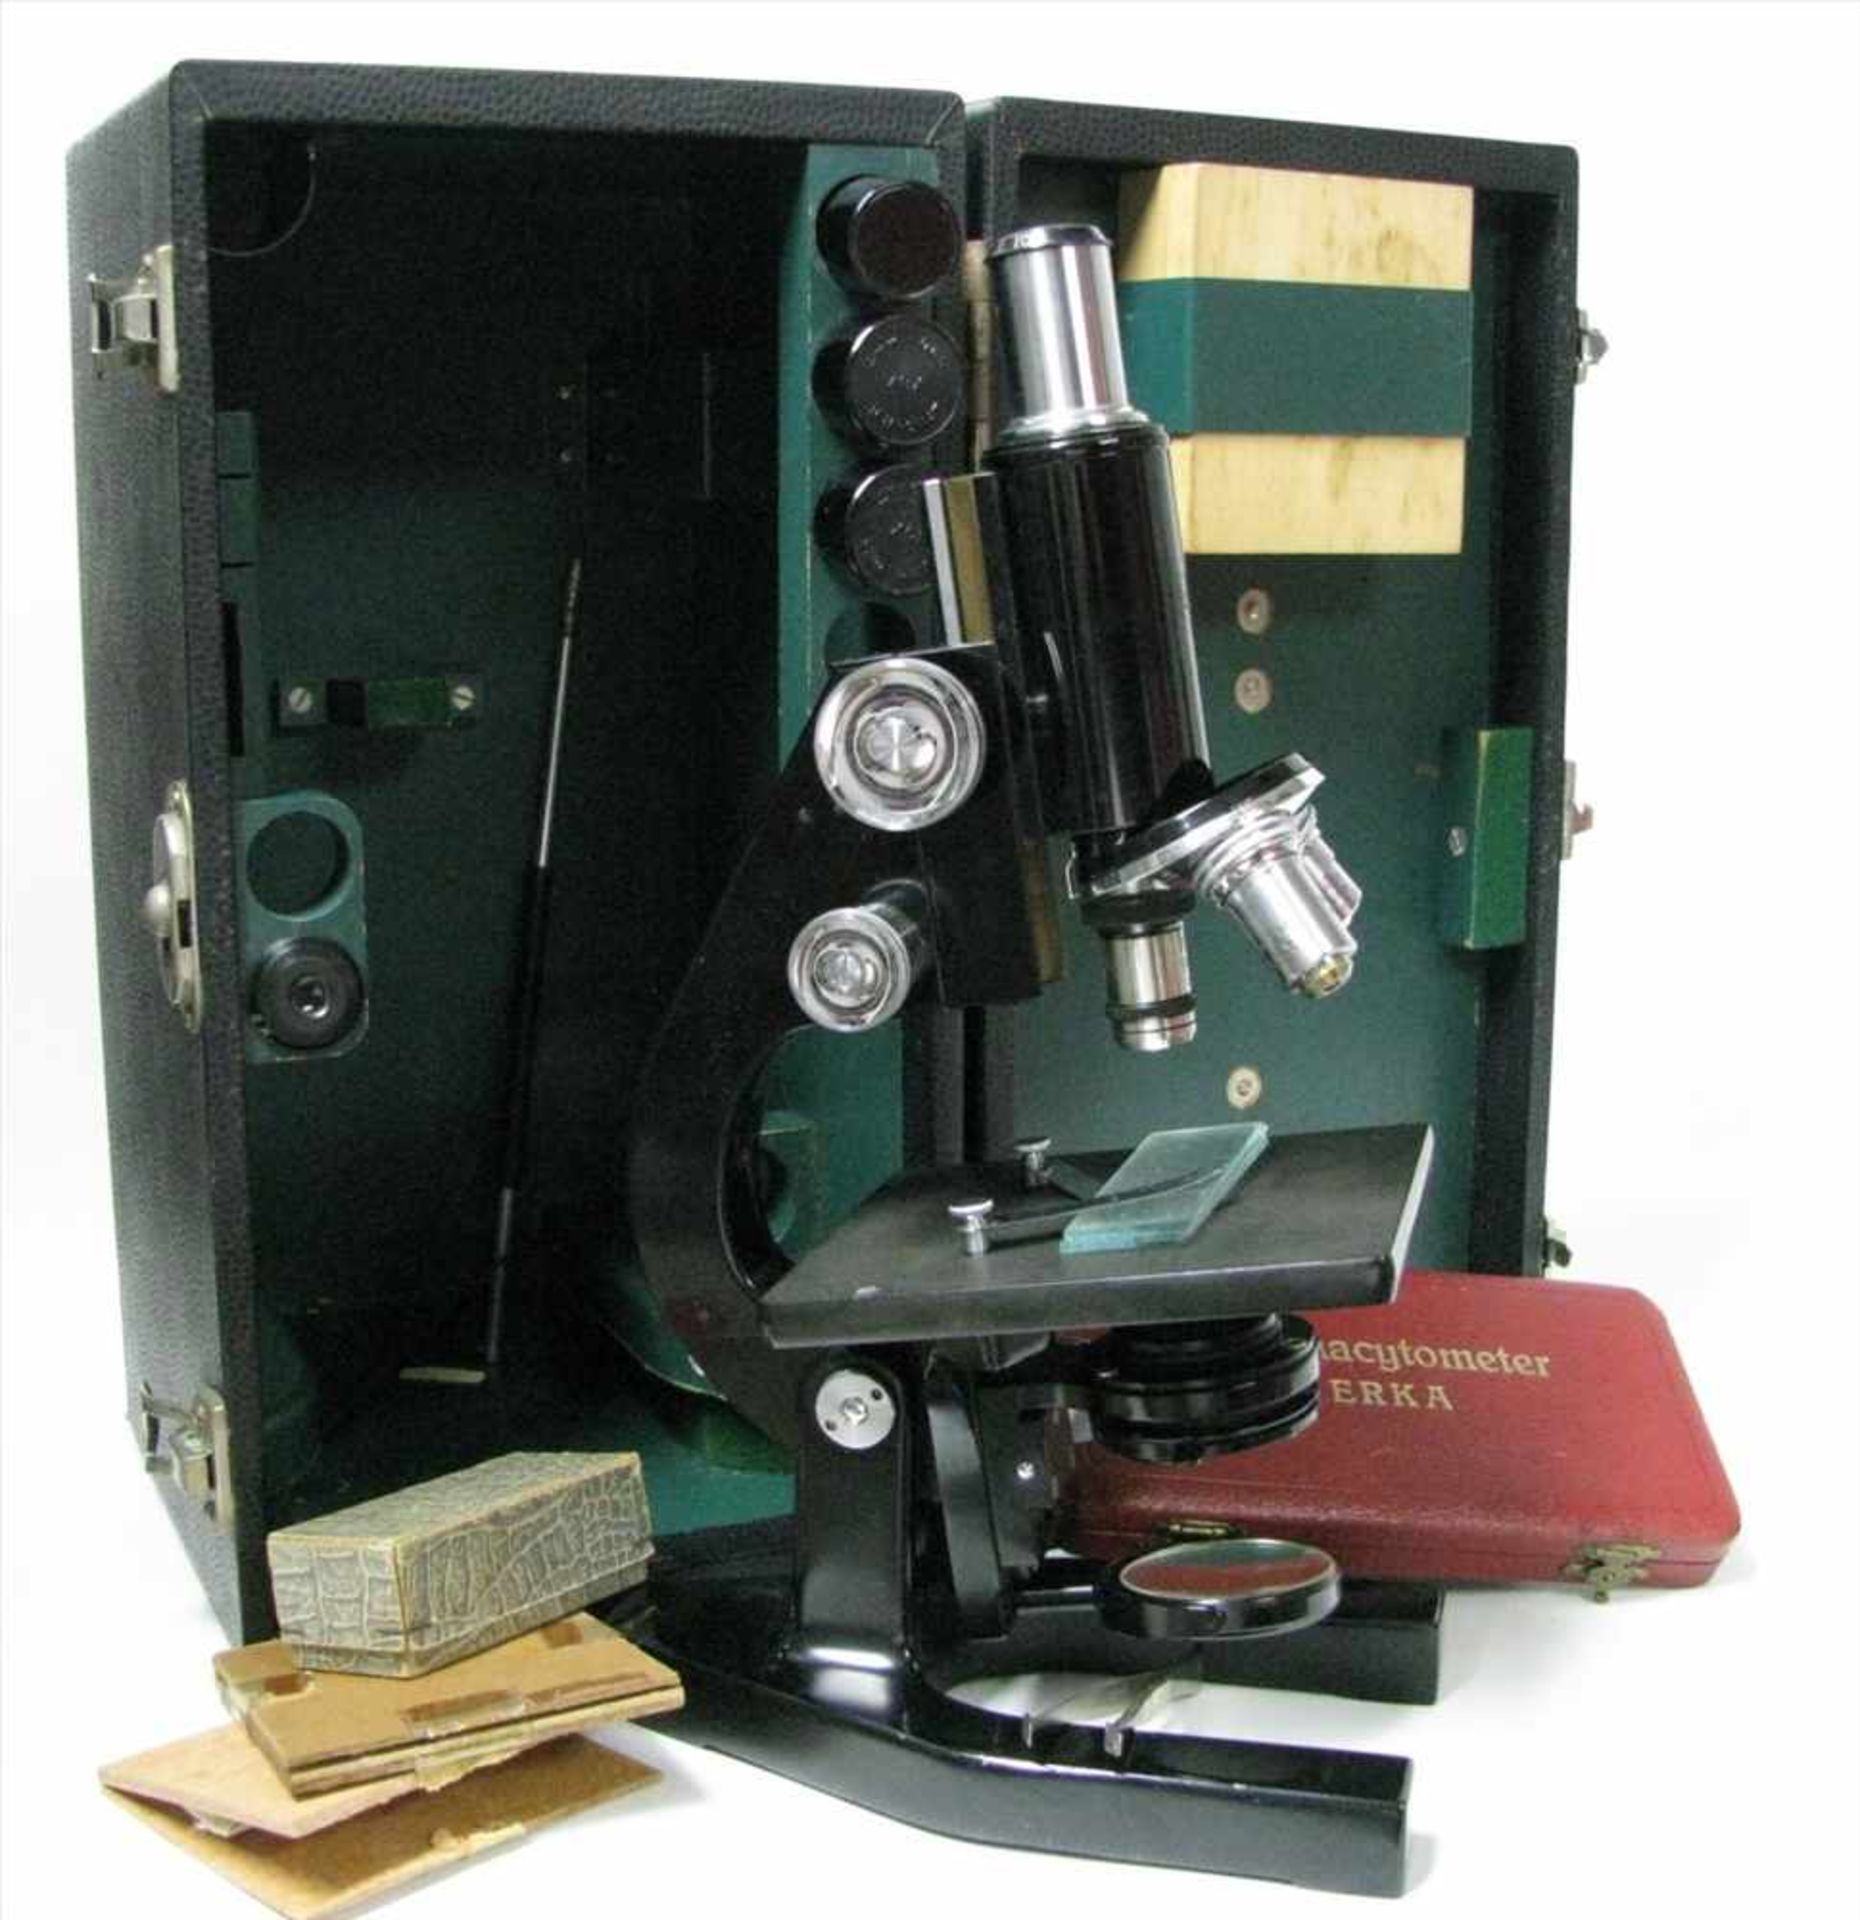 Mikroskop im Koffer, sign. "Bausch & Lomb" (USA), nummeriert, 3 Linsen, mit Zubehör, h 35 cm, d 18